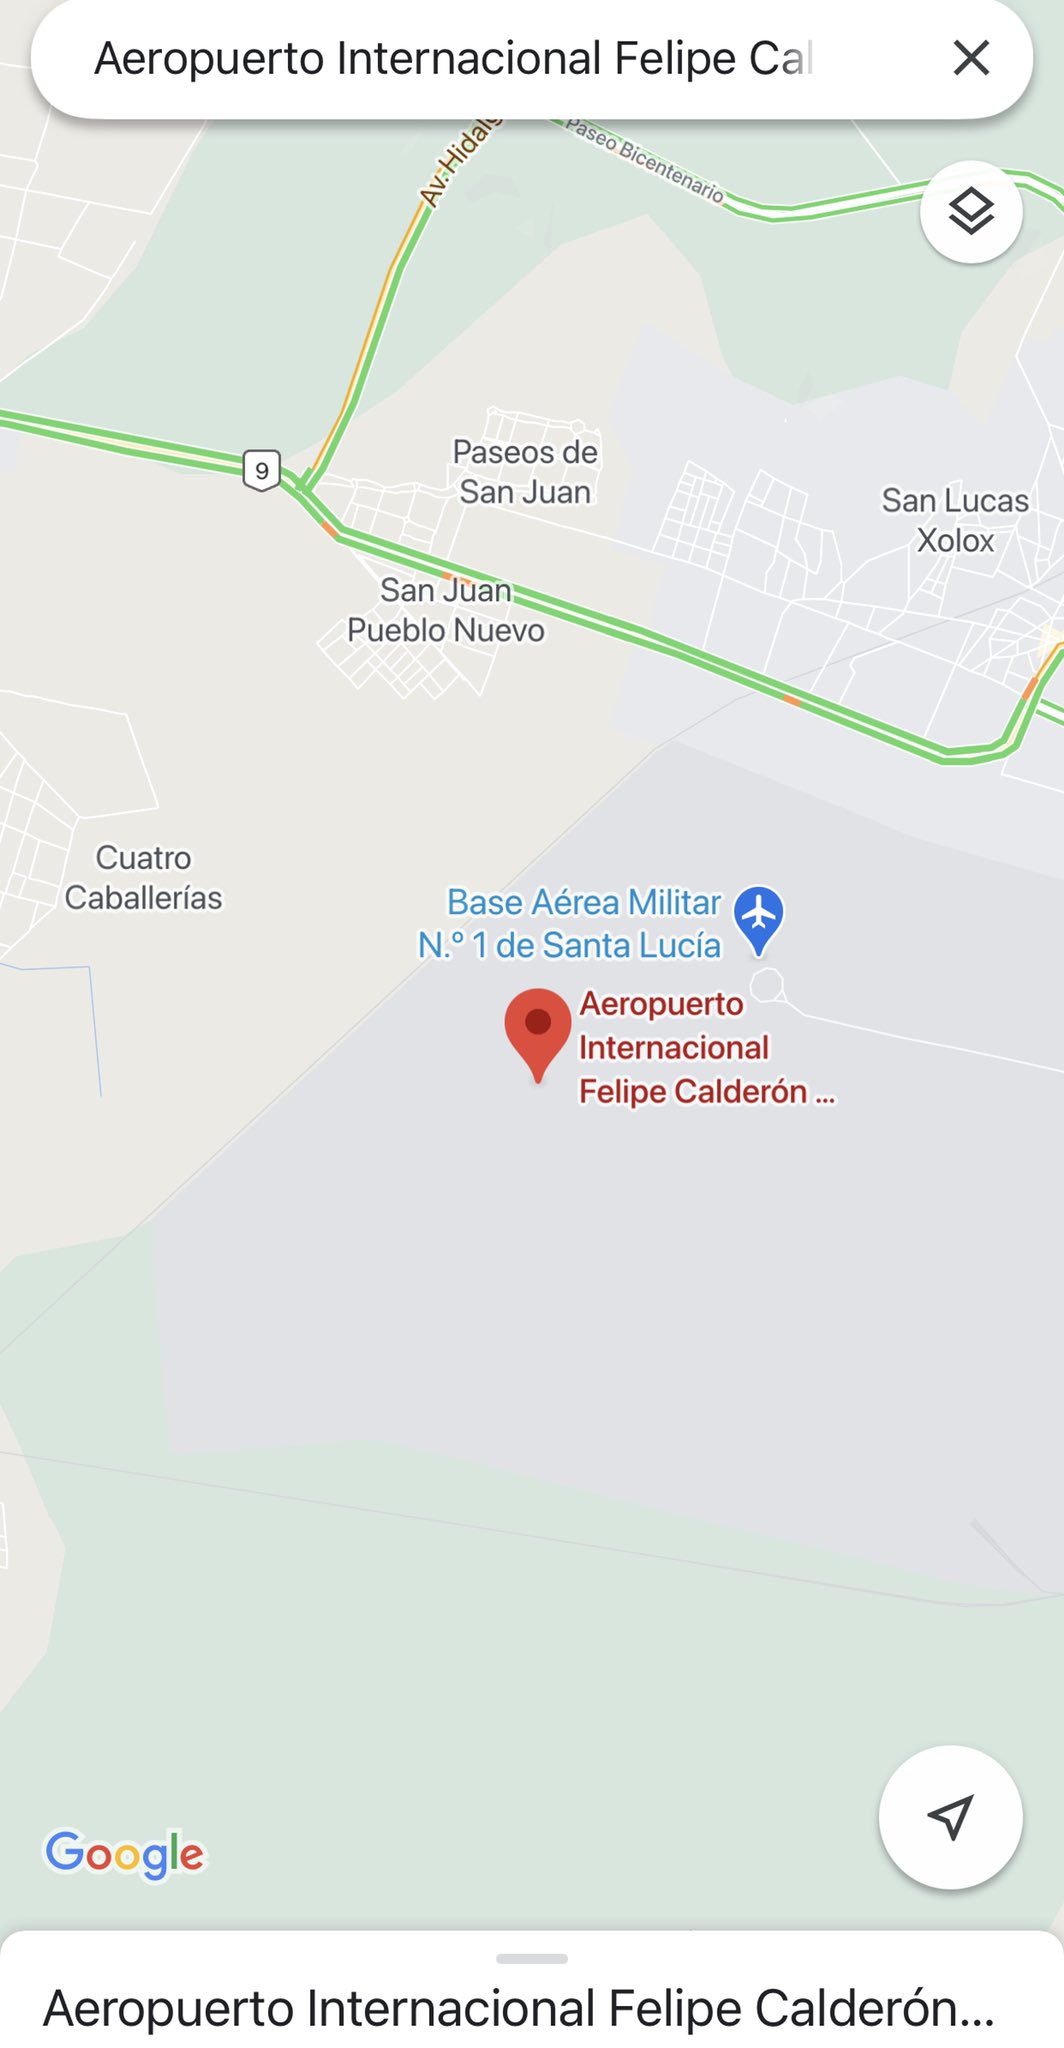 Cambia Google Maps nombre del Aeropuerto Internacional Felipe Ángeles a "Felipe Calderón"